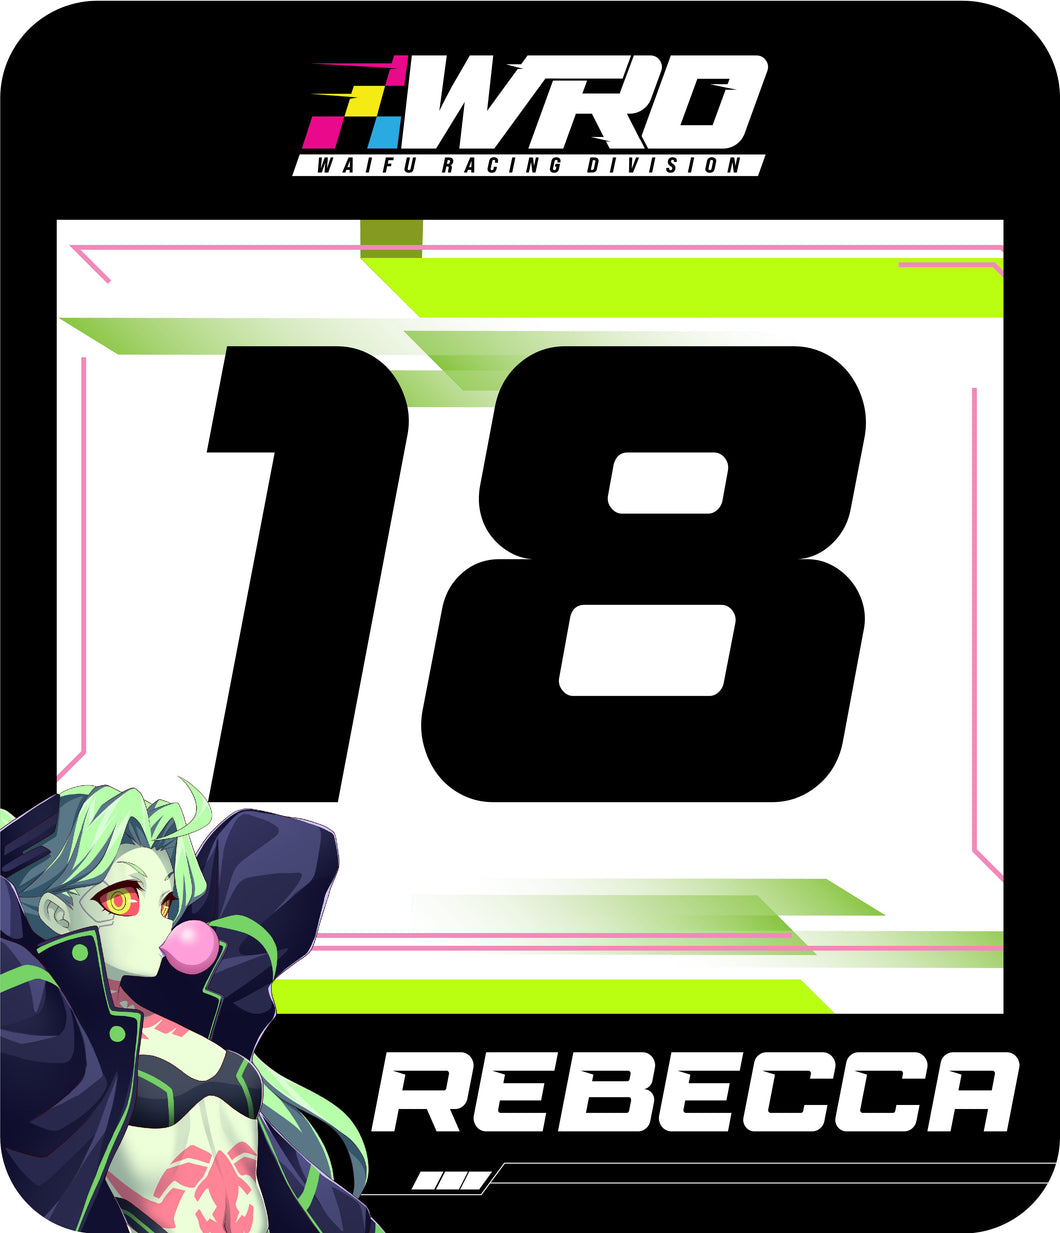 Rebecca Track Number (Set)